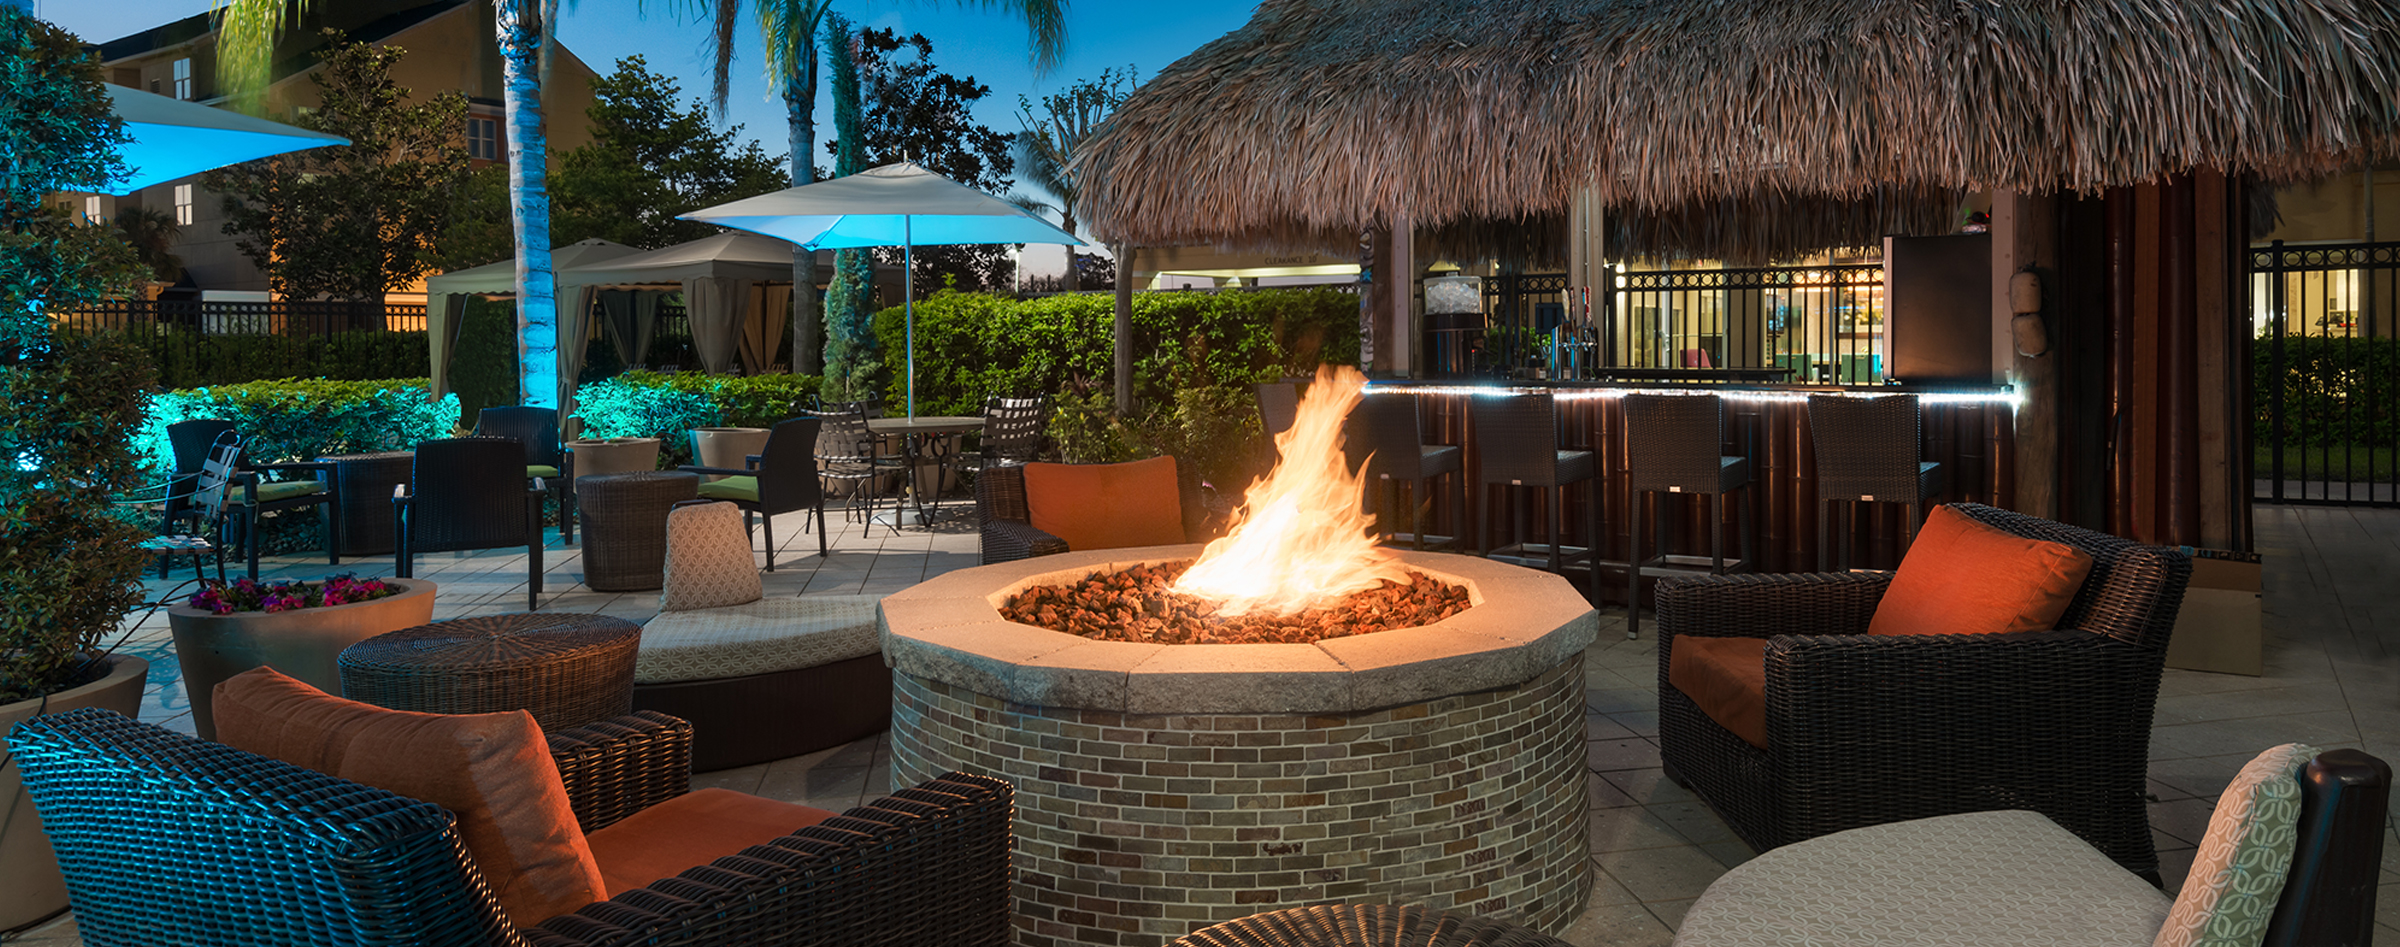 Tiki bar and fire pit at Hilton Garden Inn Orlando I-Drive